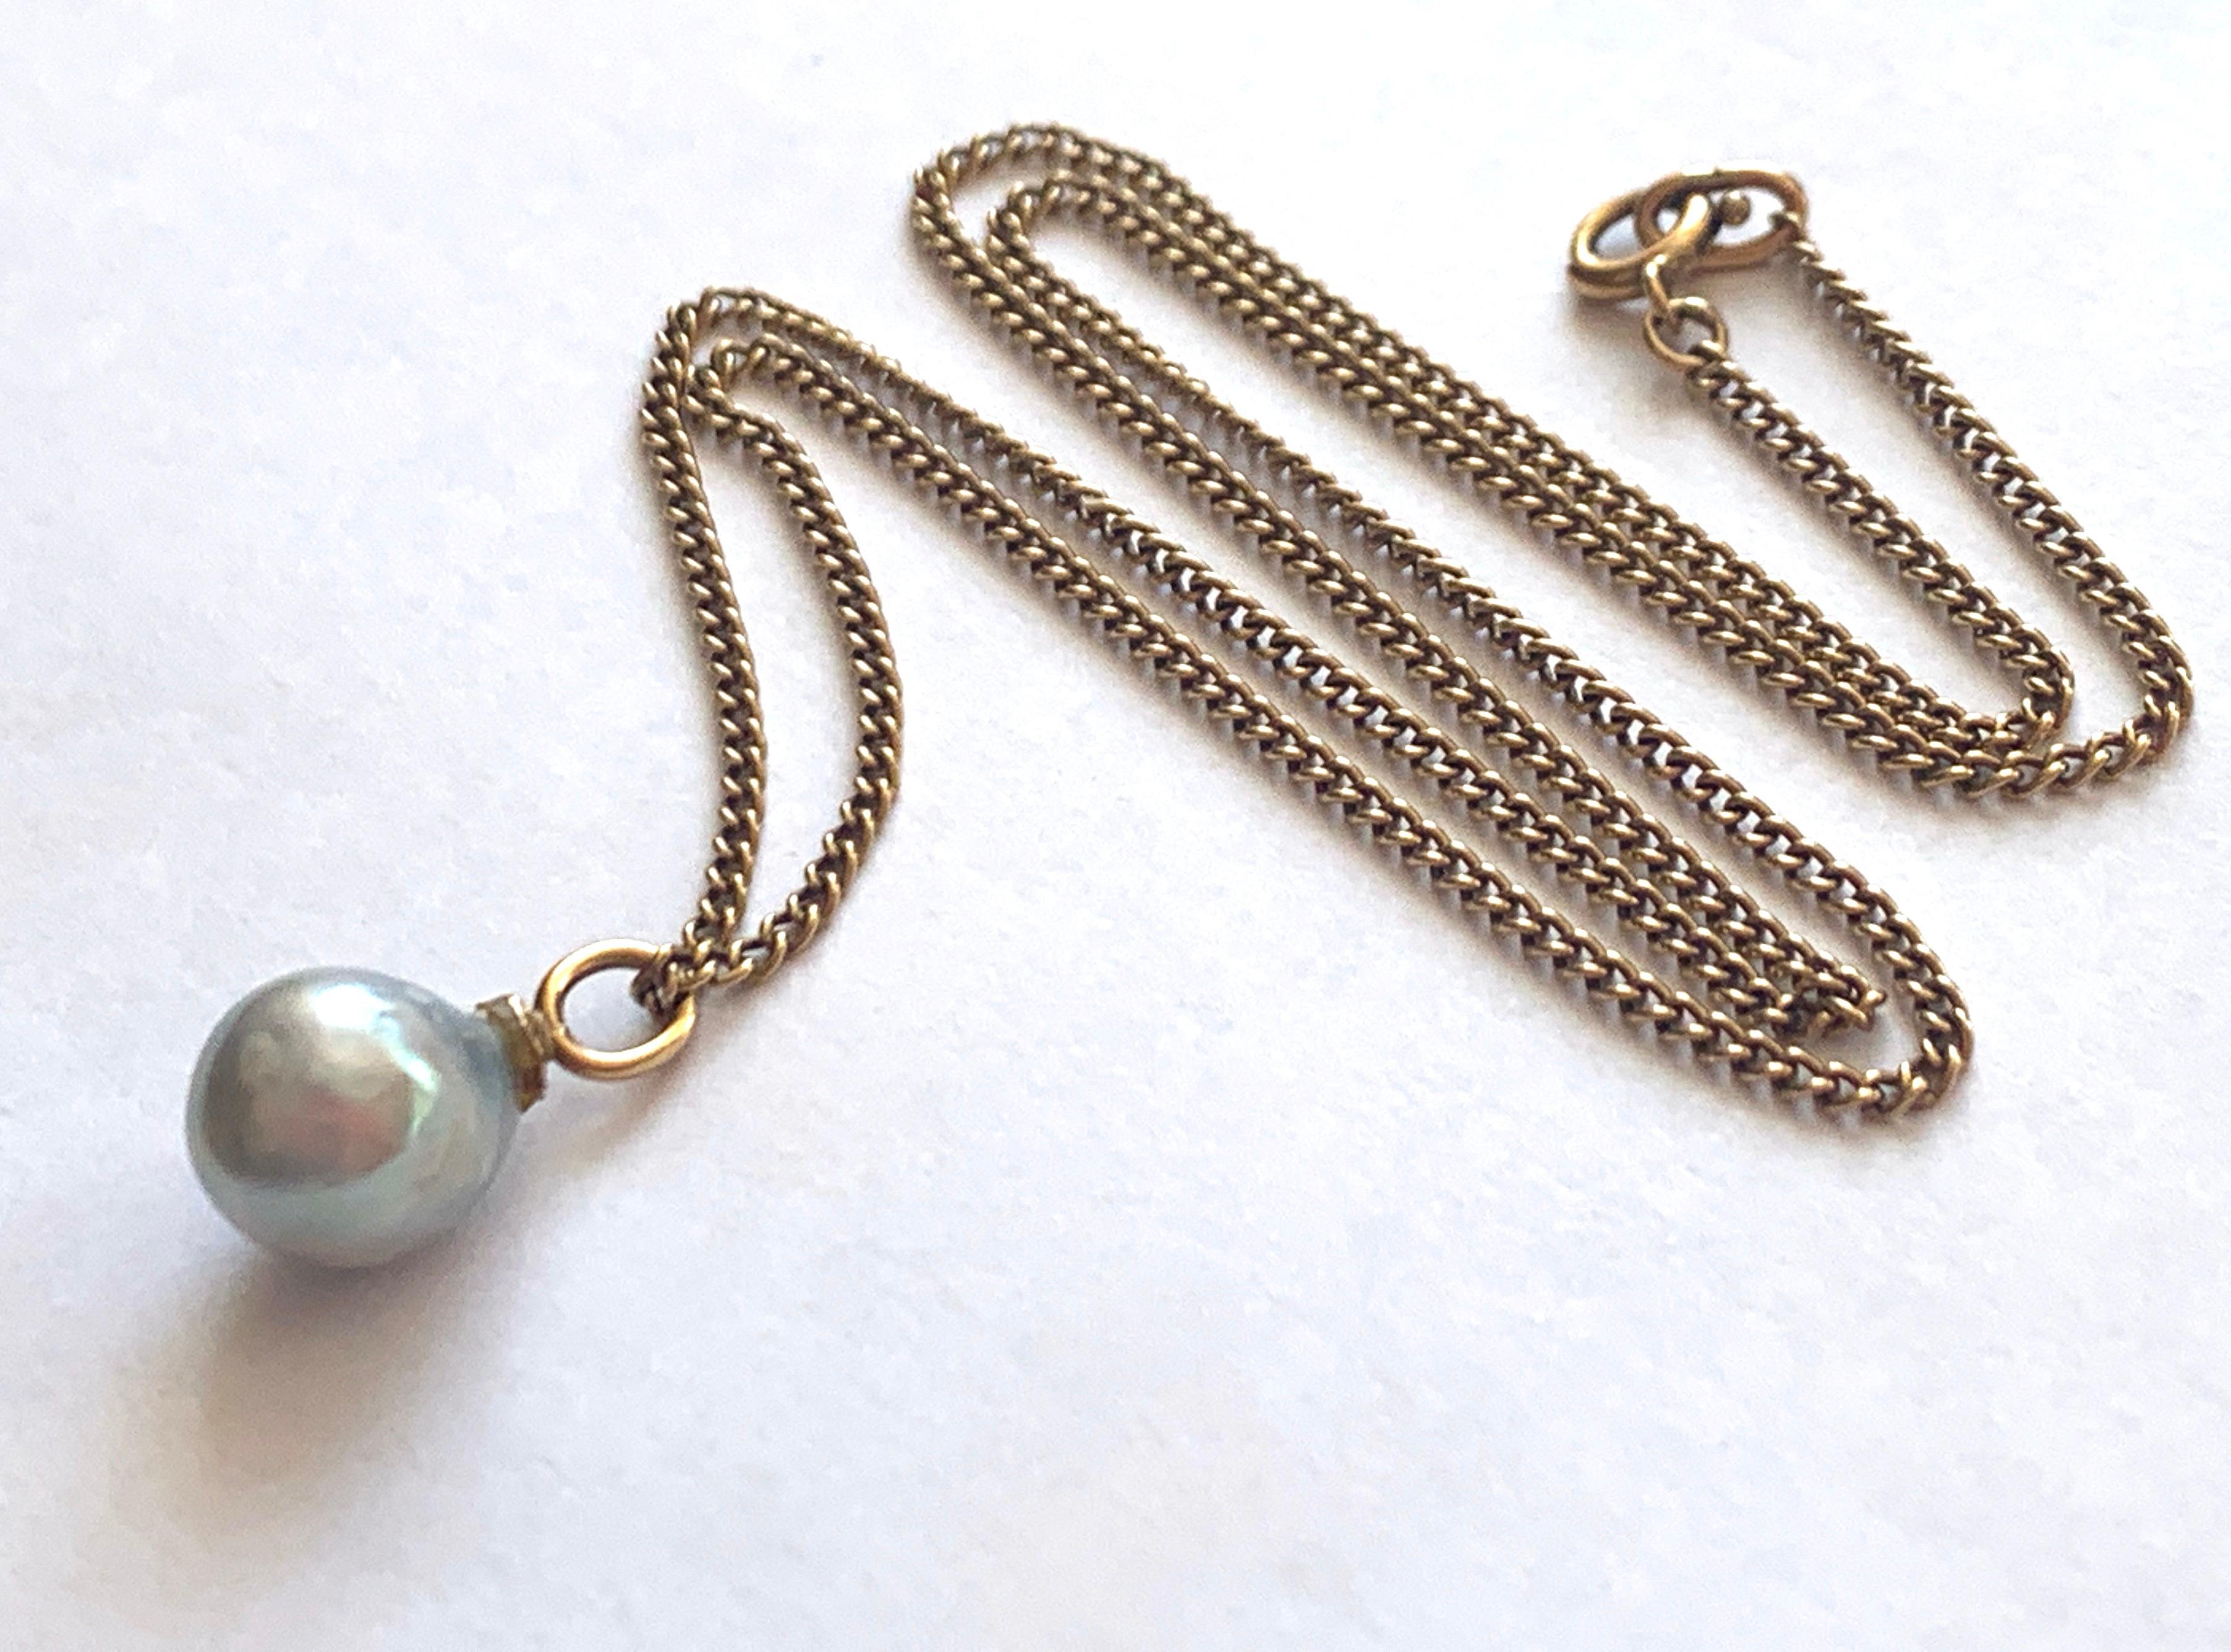 Uncut 9ct 375 Gold Antique Blue Baroque Pearl Necklace For Sale